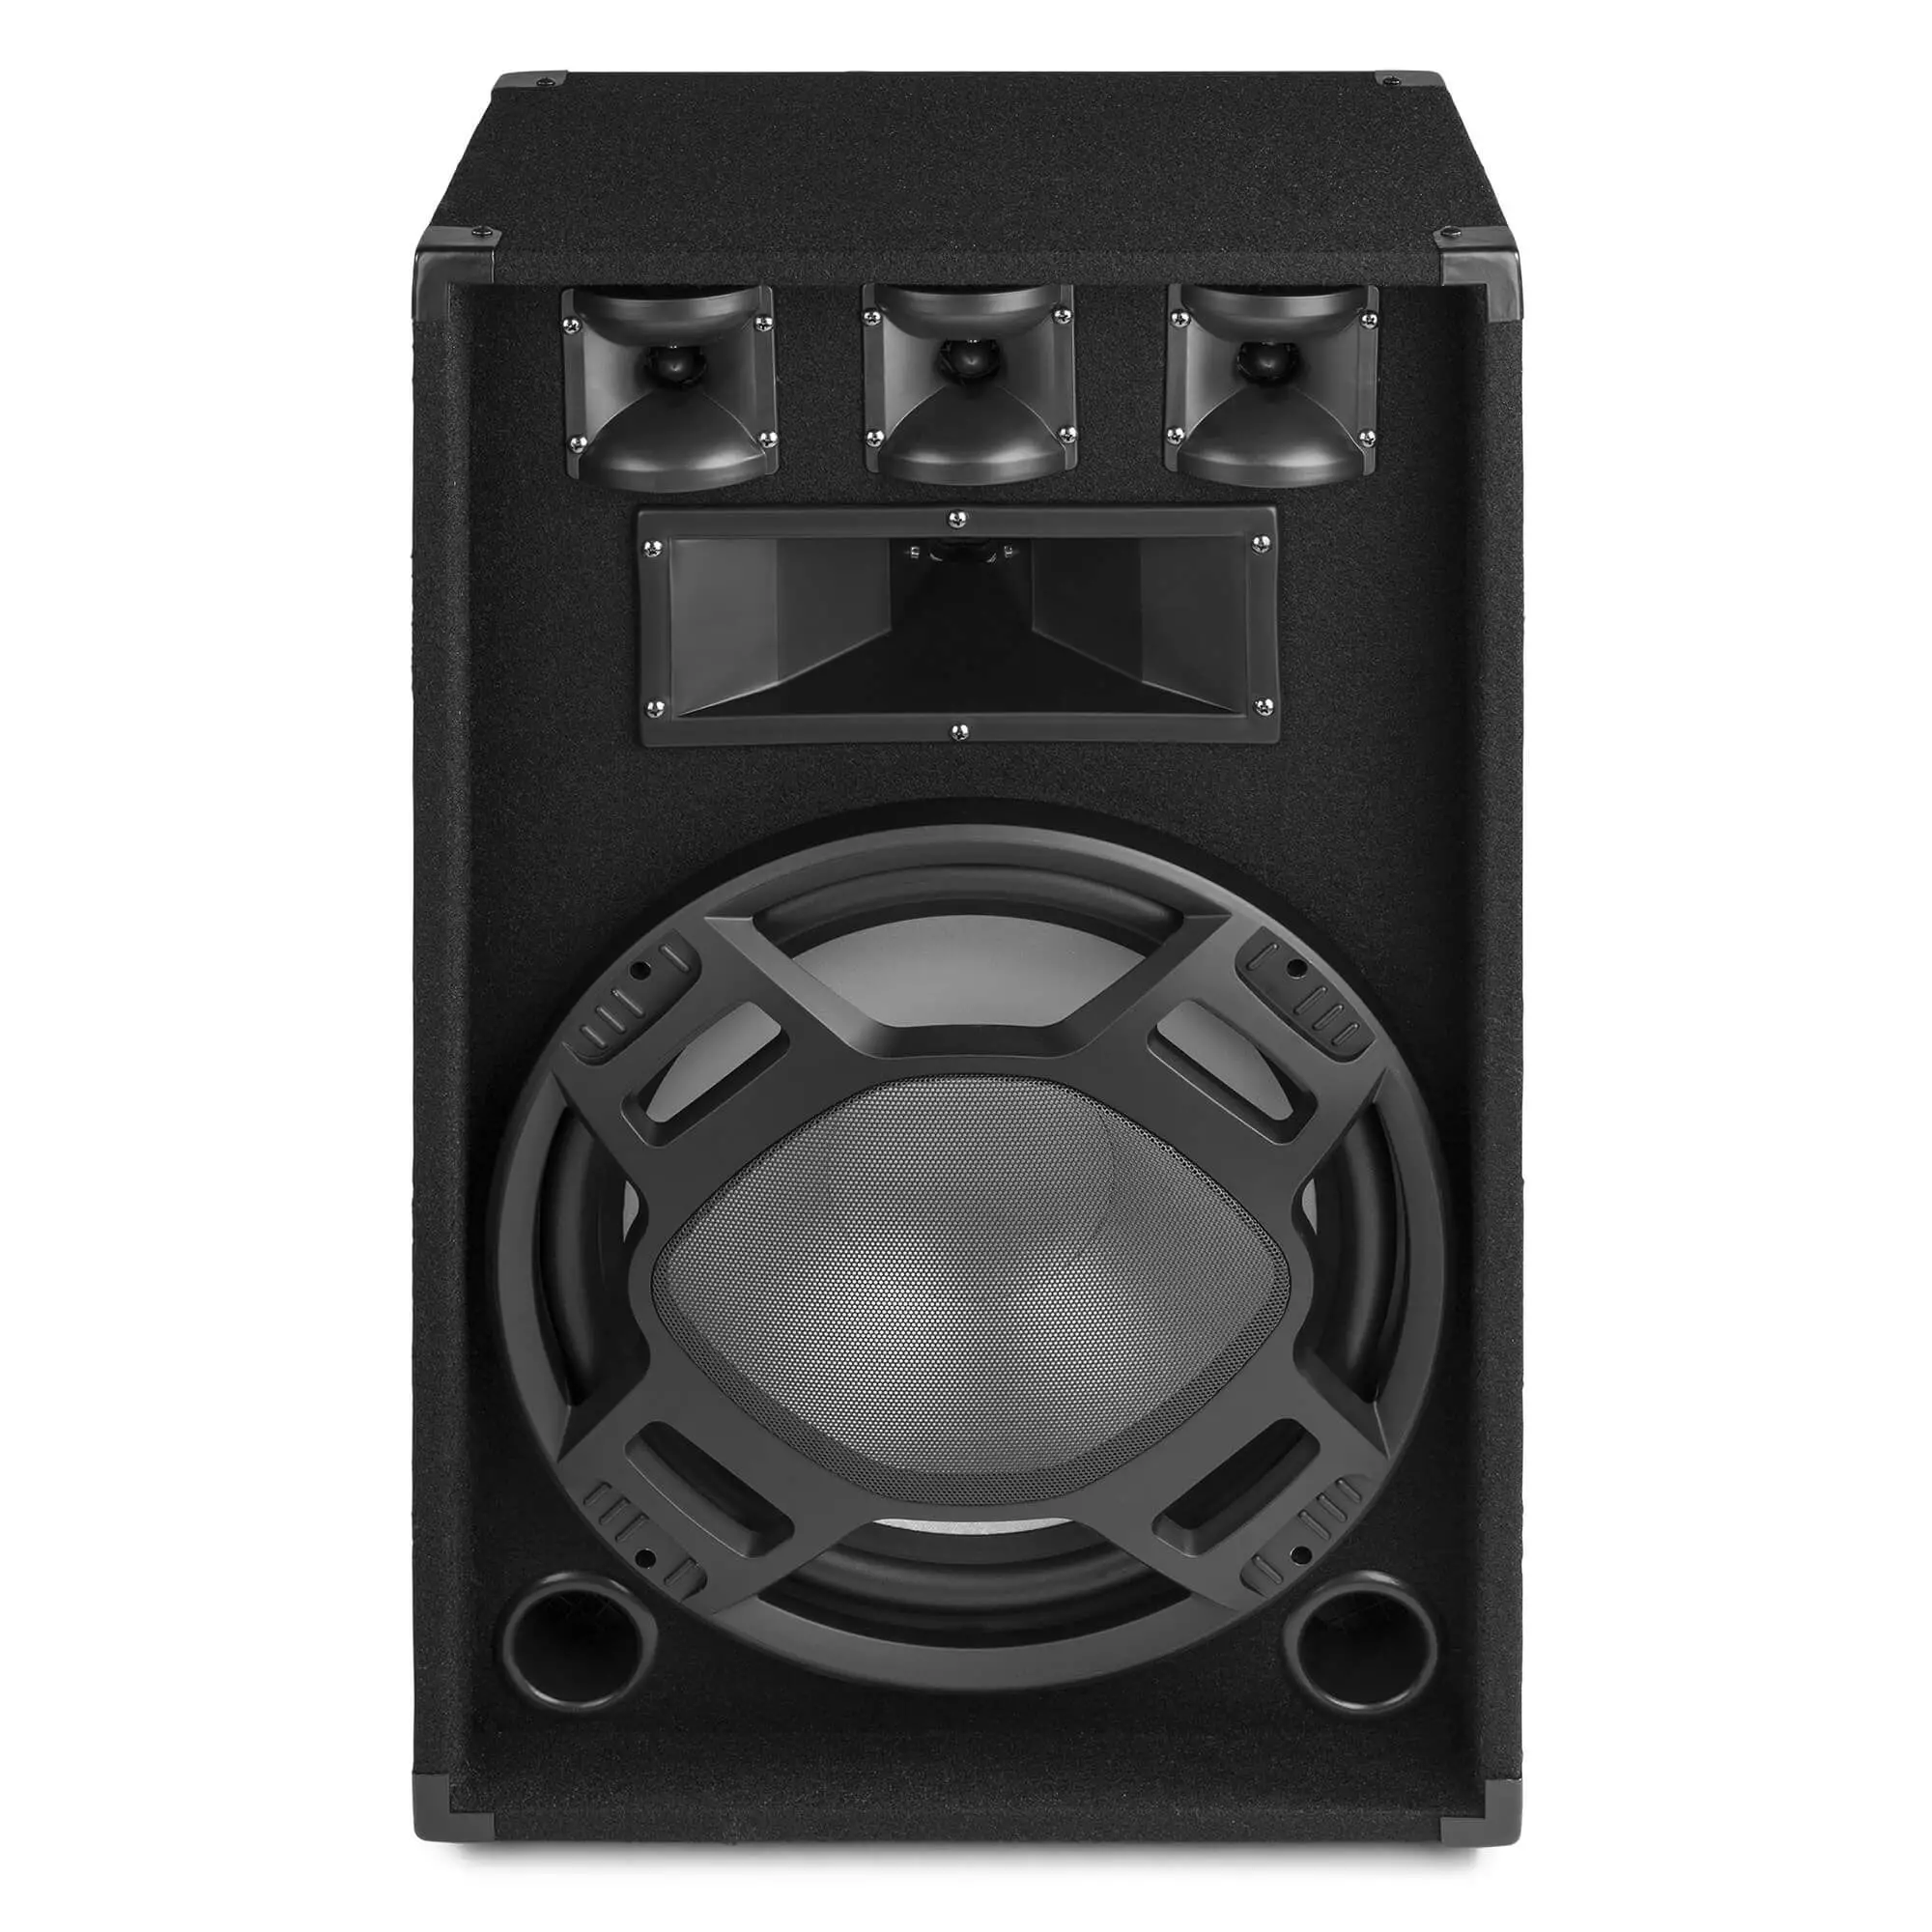 Fenton bs15 disco speaker 15 met ritmische ledaposs 800w 3